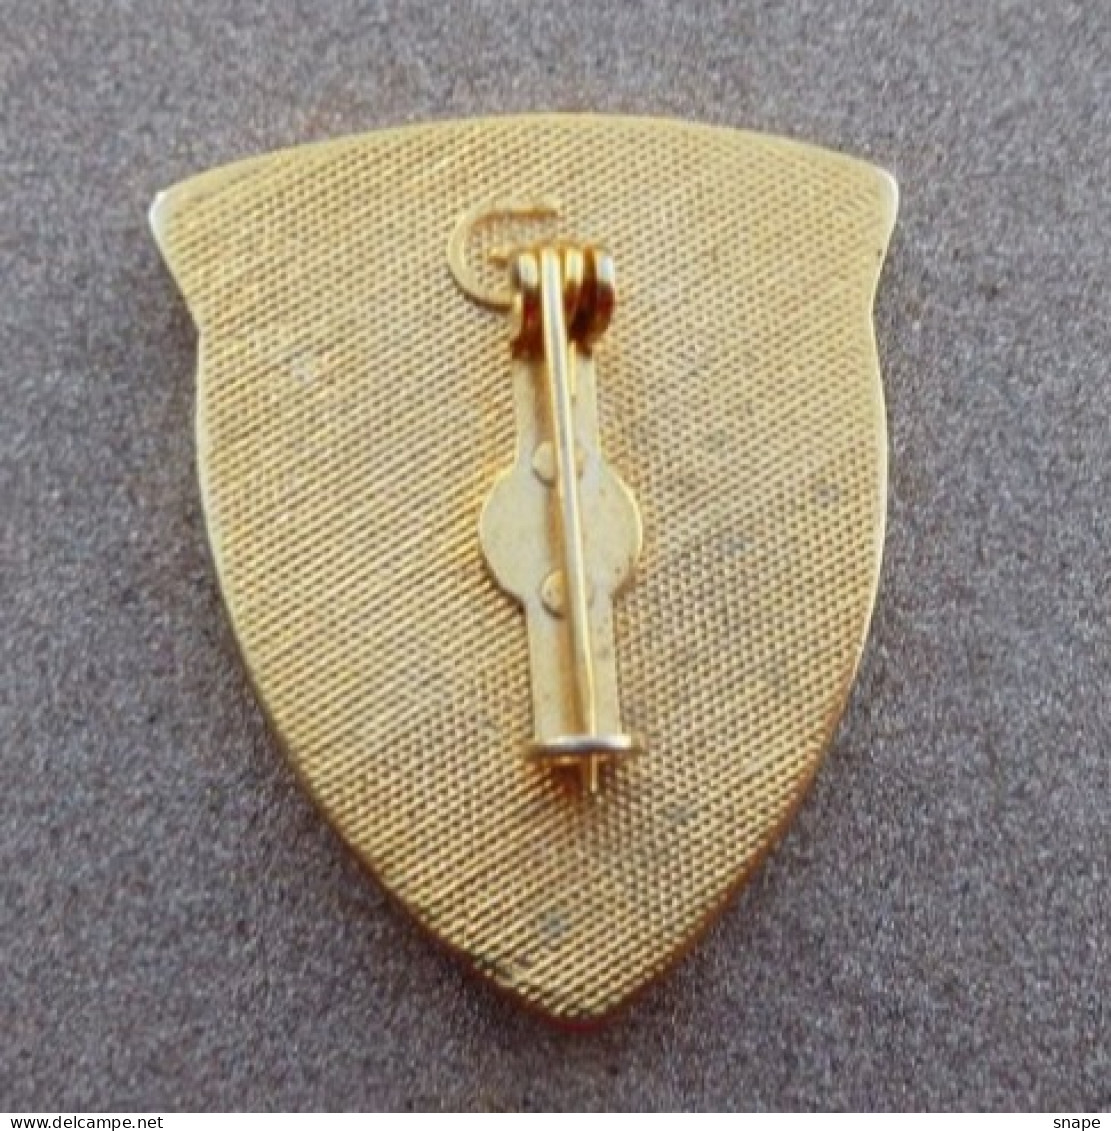 DISTINTIVO Vetrificato A Spilla BAZOOKA - Esercito Italiano Incarichi - Italian Army Pinned Badge - Used (286) - Armée De Terre